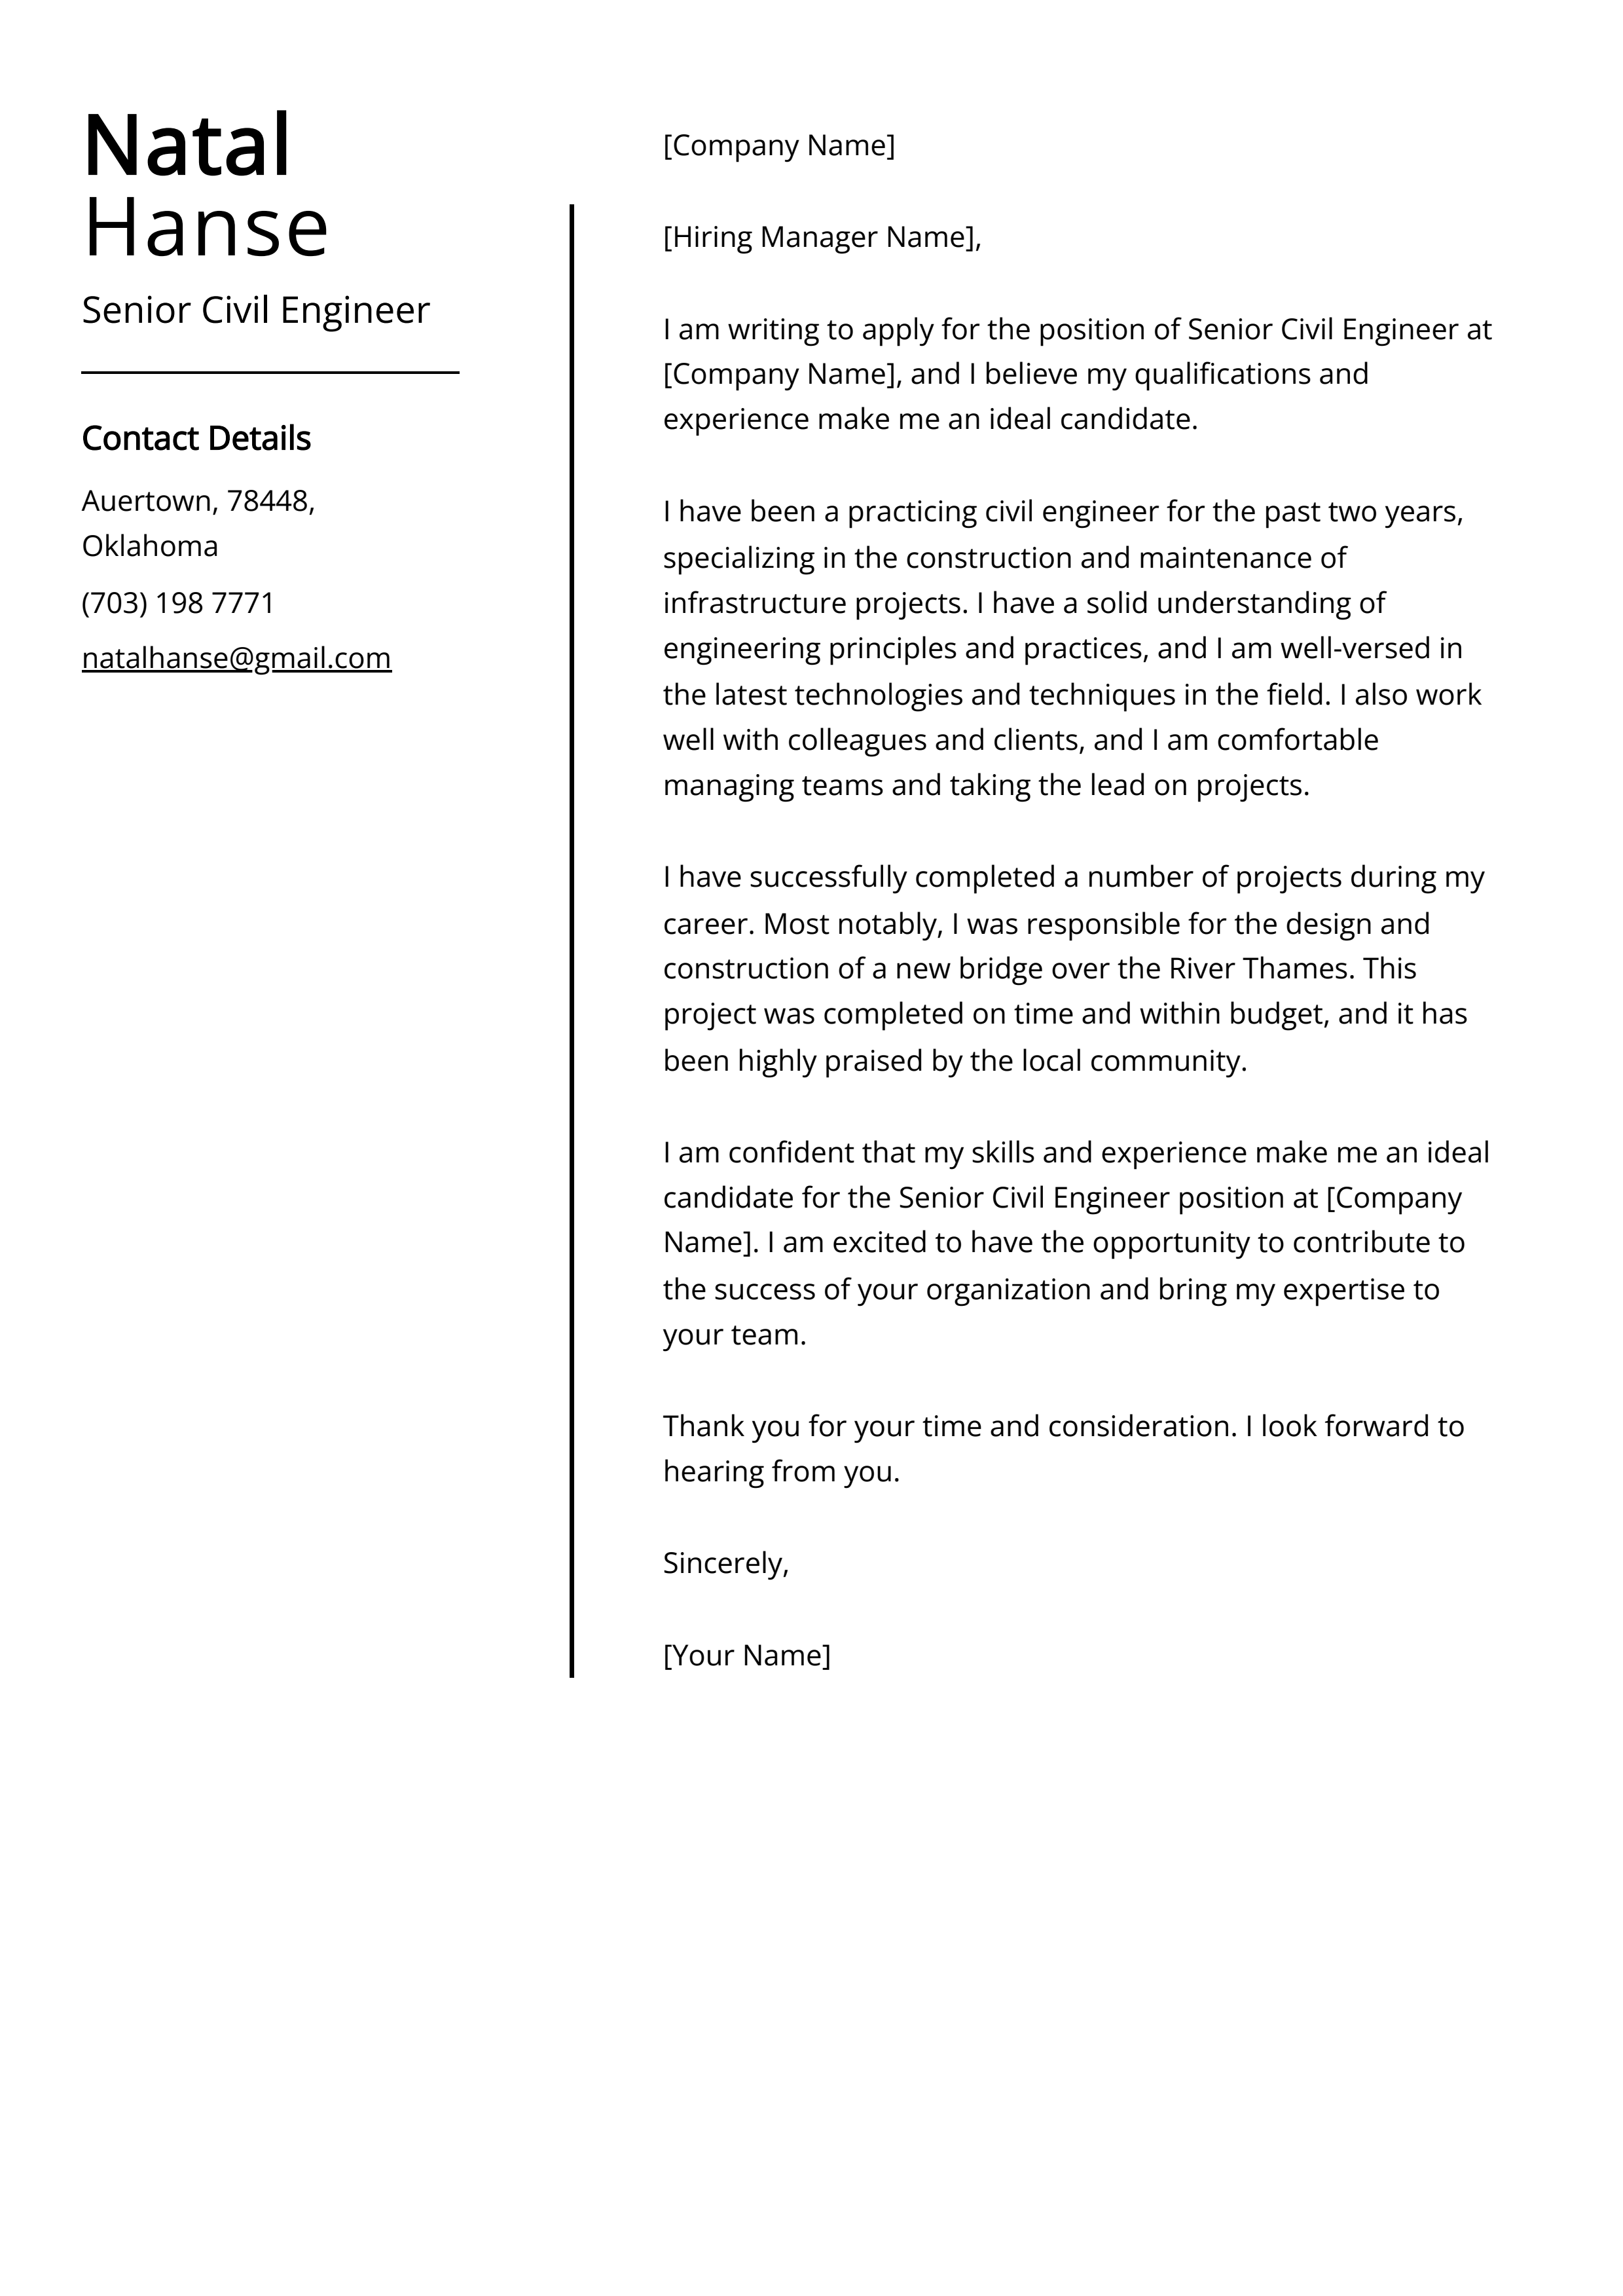 Senior Civil Engineer Cover Letter Example